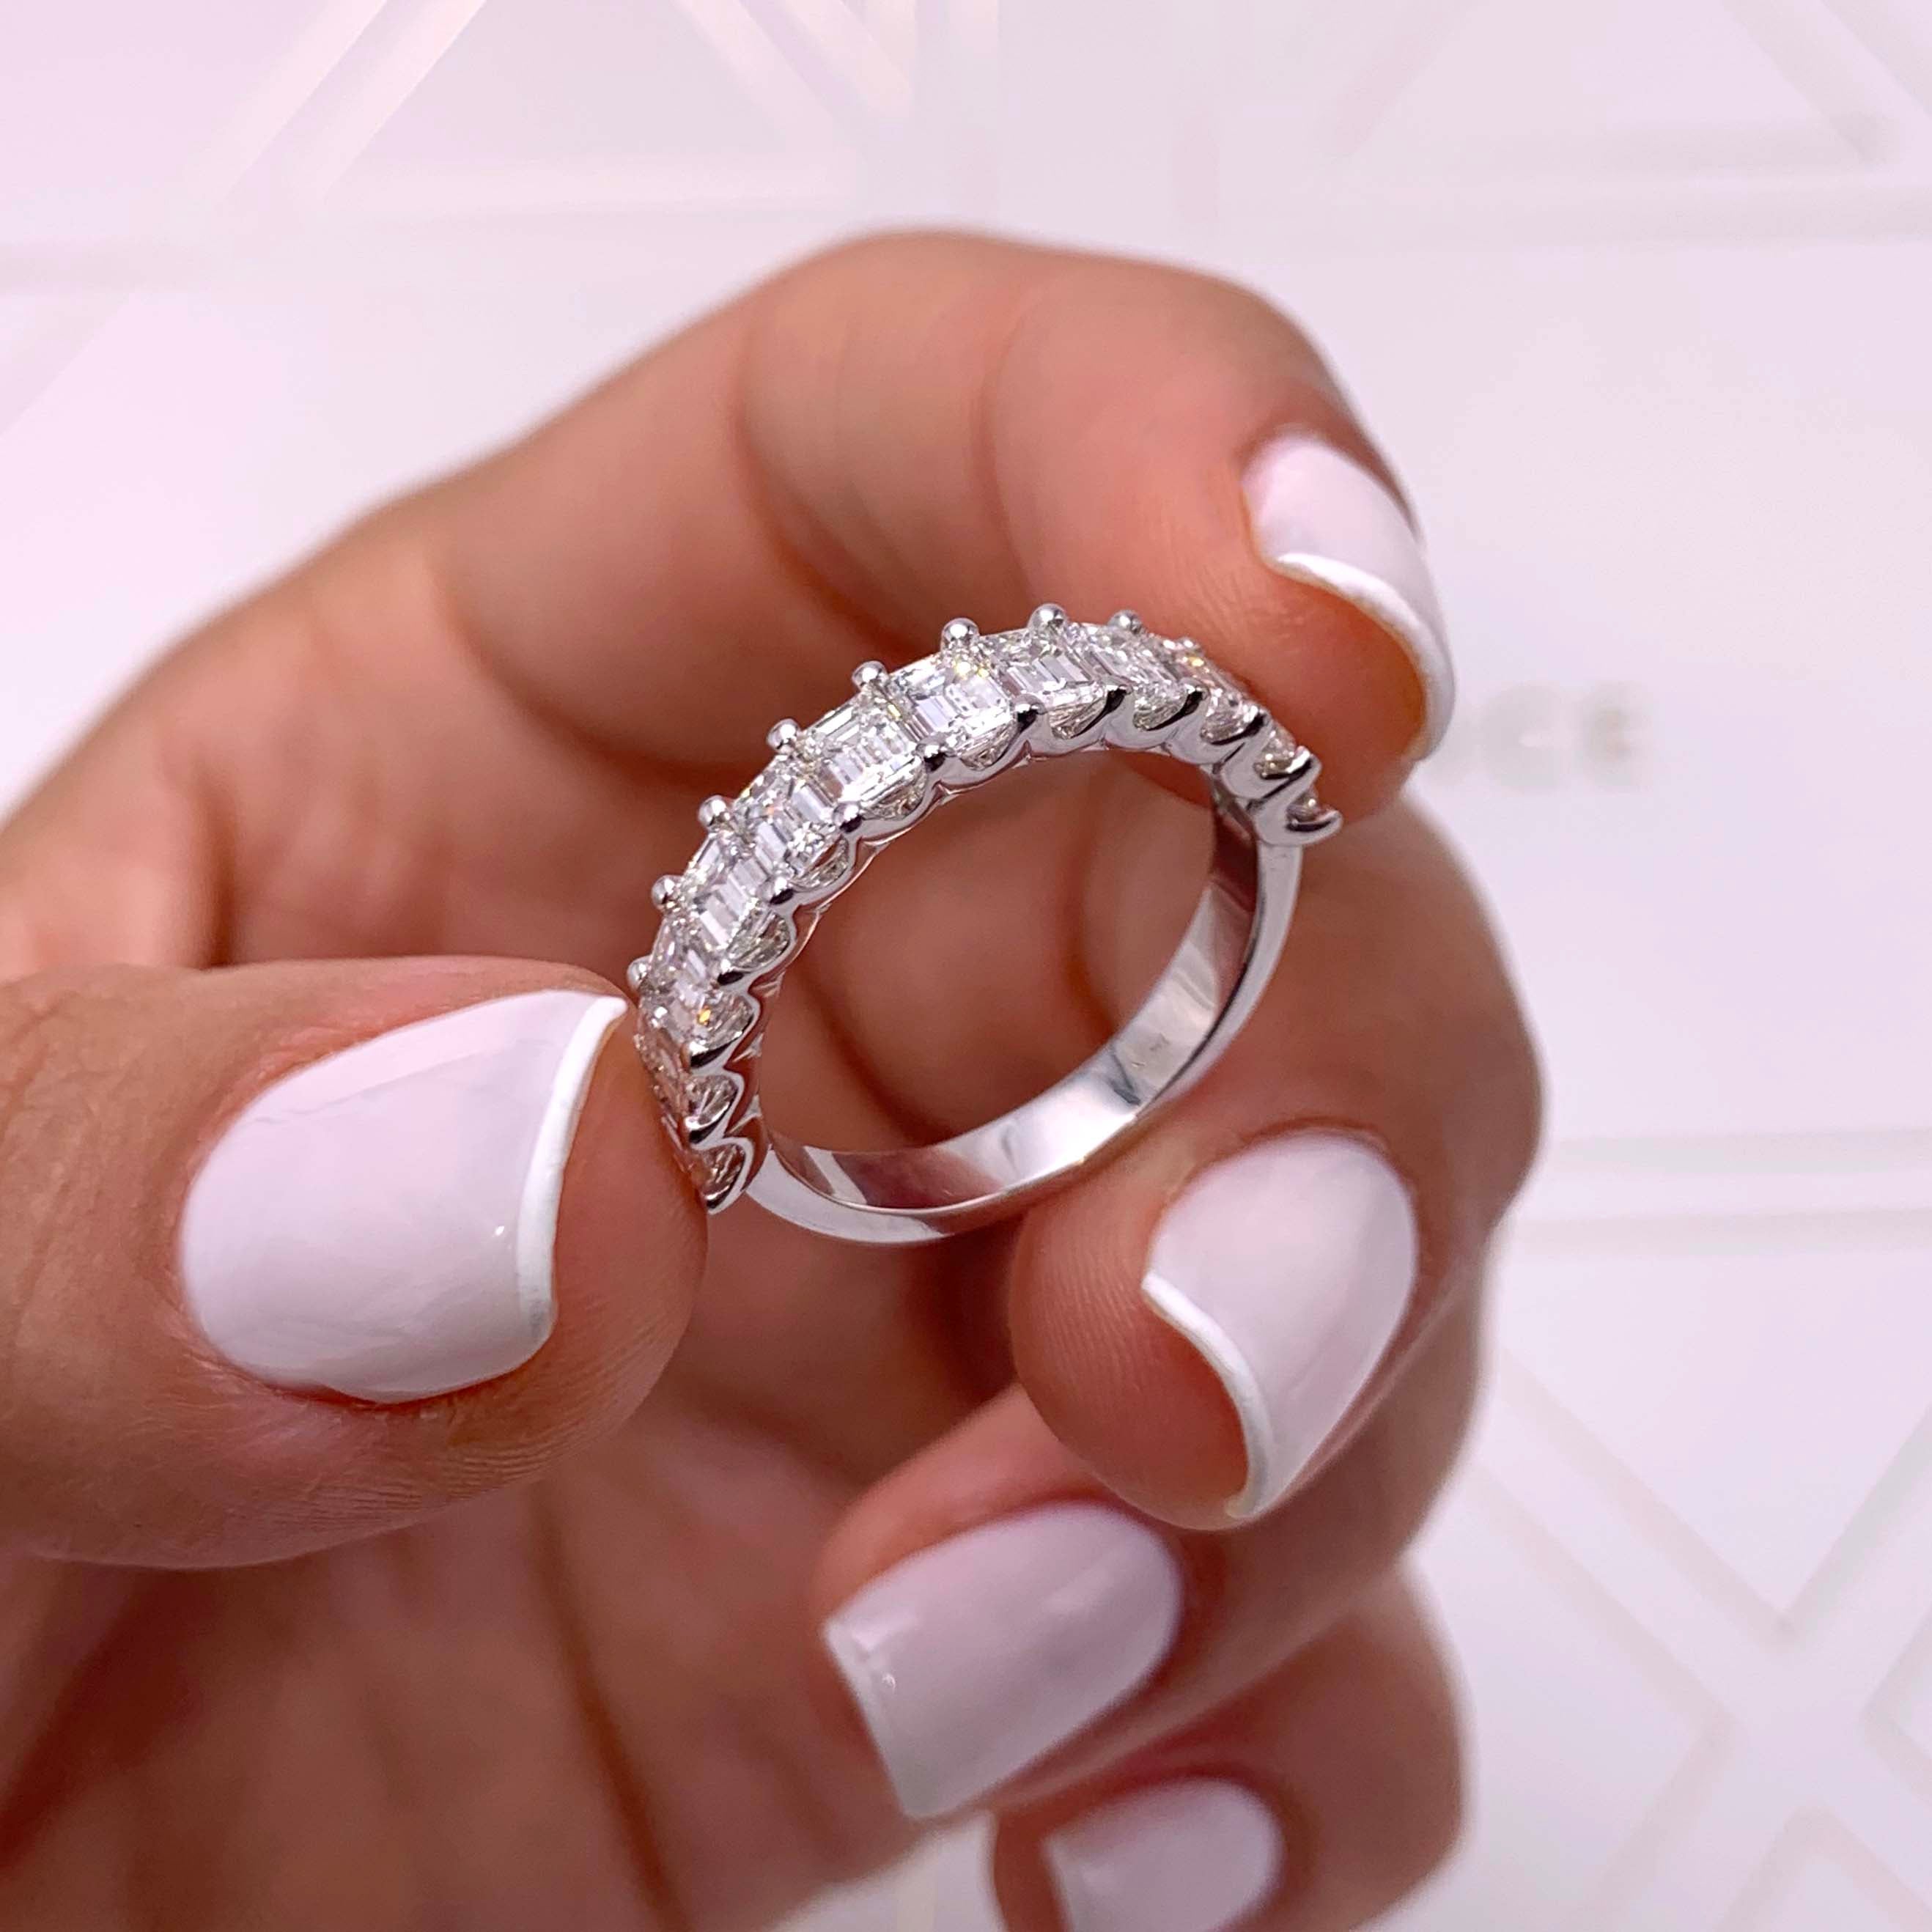 Gina Half Eternity Wedding Ring -18K White Gold